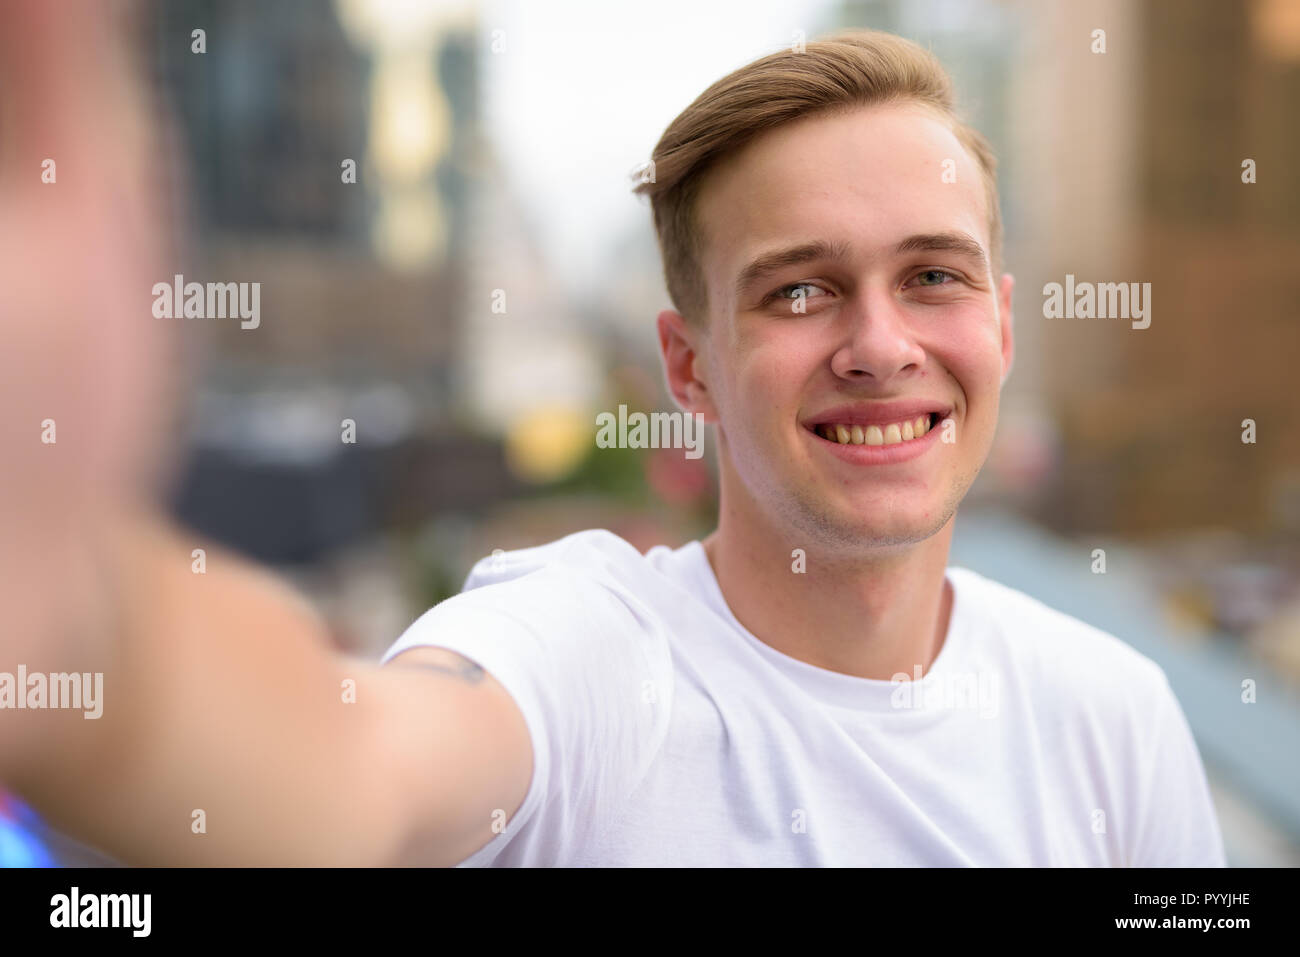 Persönliche Sicht der gutaussehenden Mann unter selfie mit Telefon Stockfoto